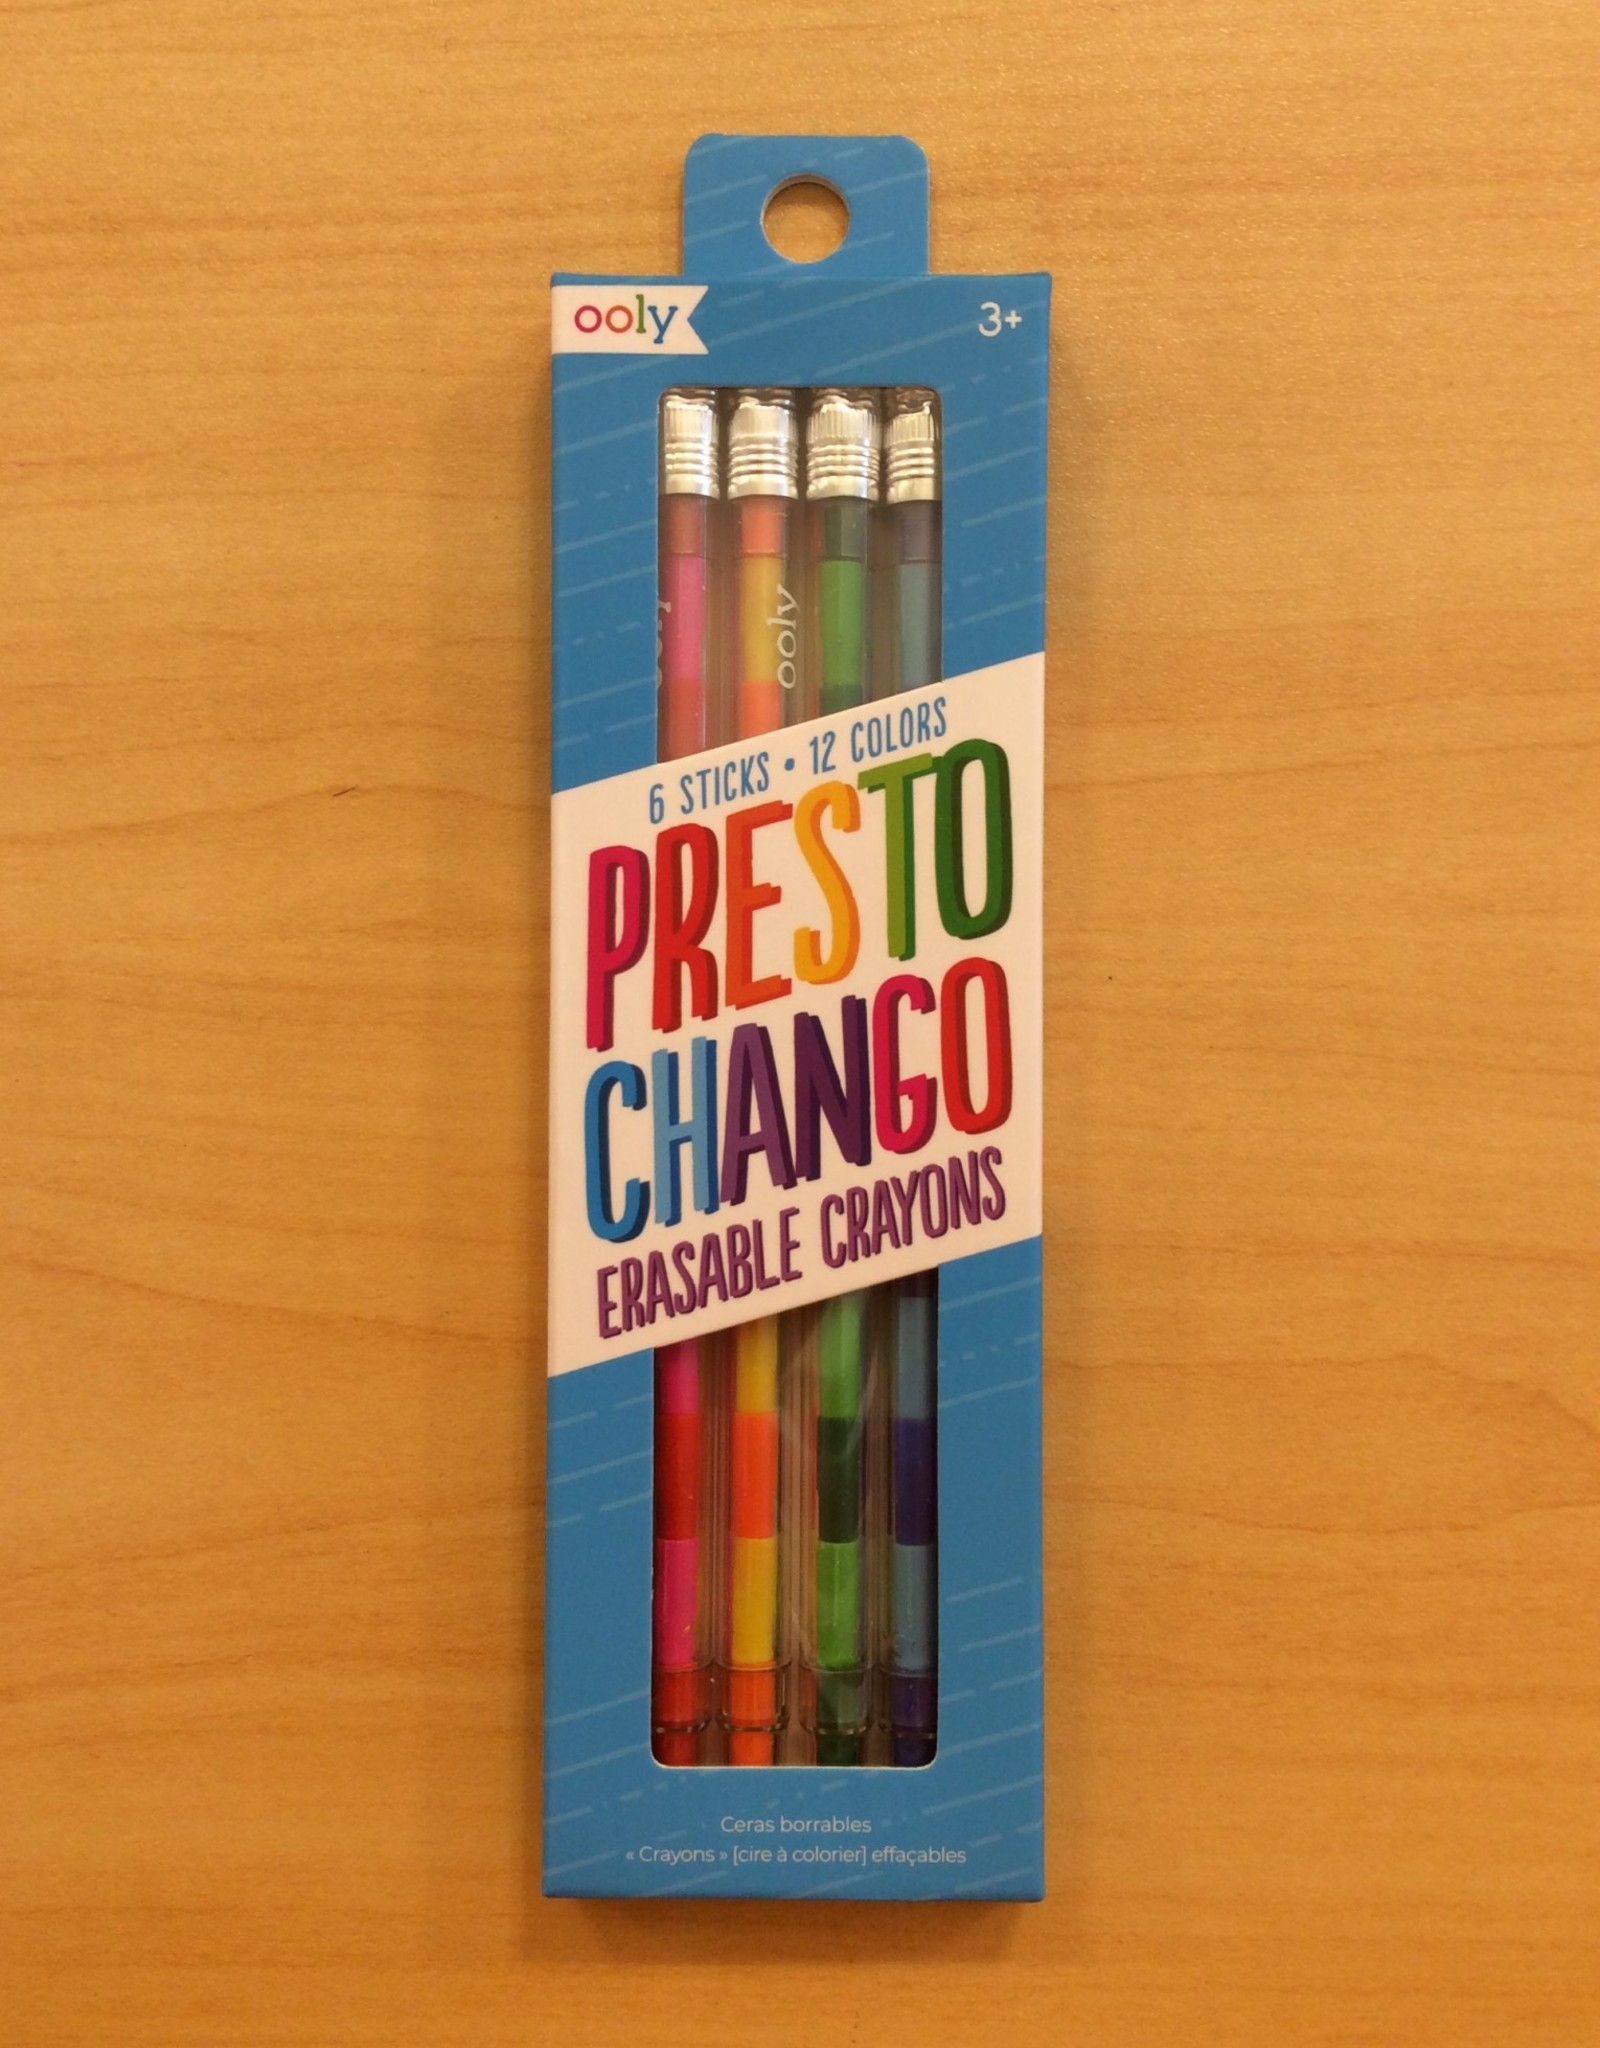 ooly 6 Presto Chango Crayons